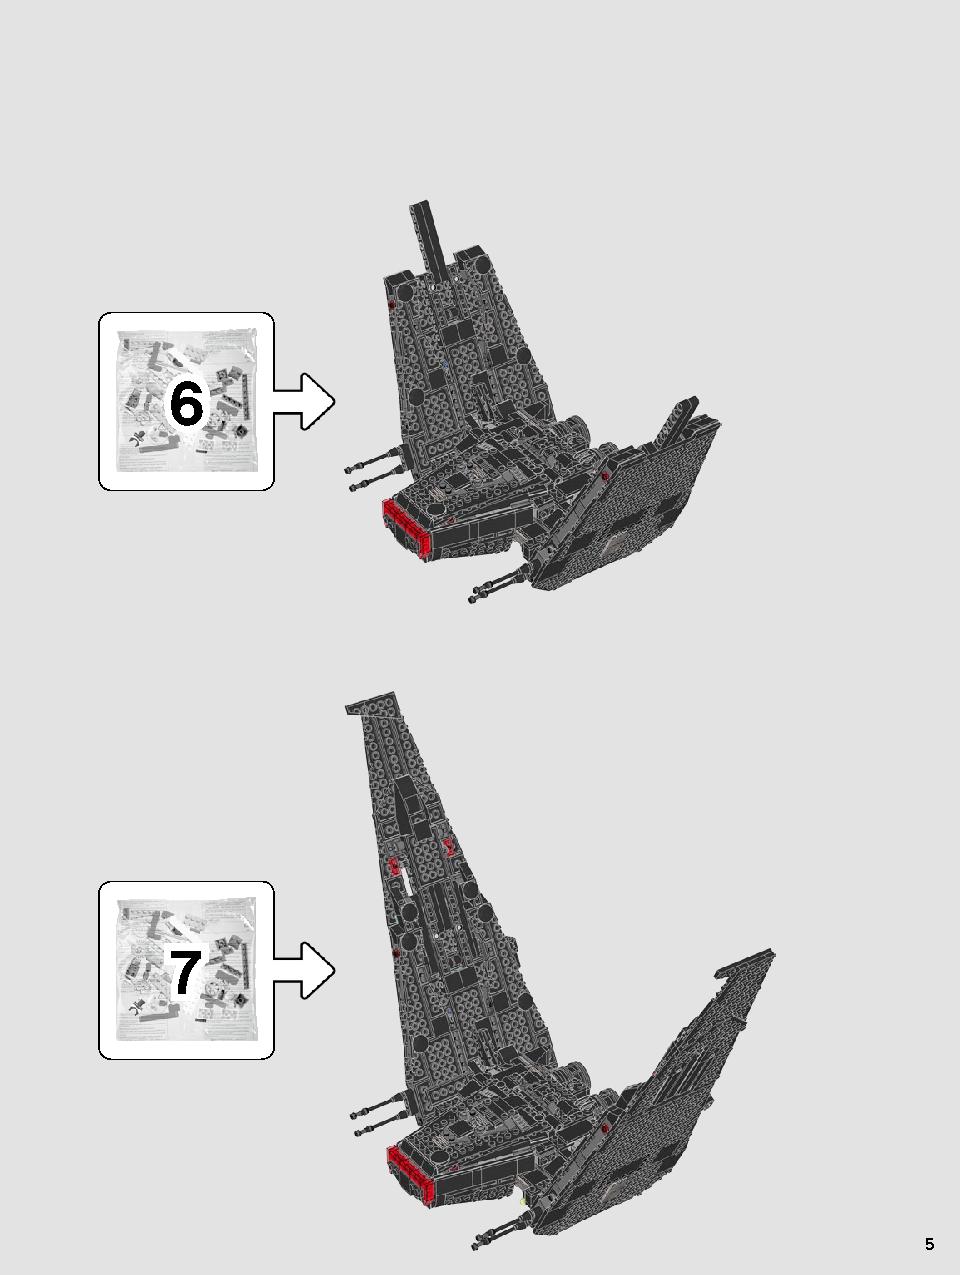 스타워즈 카일로 렌의 셔틀™ 75256 레고 세트 제품정보 레고 조립설명서 5 page